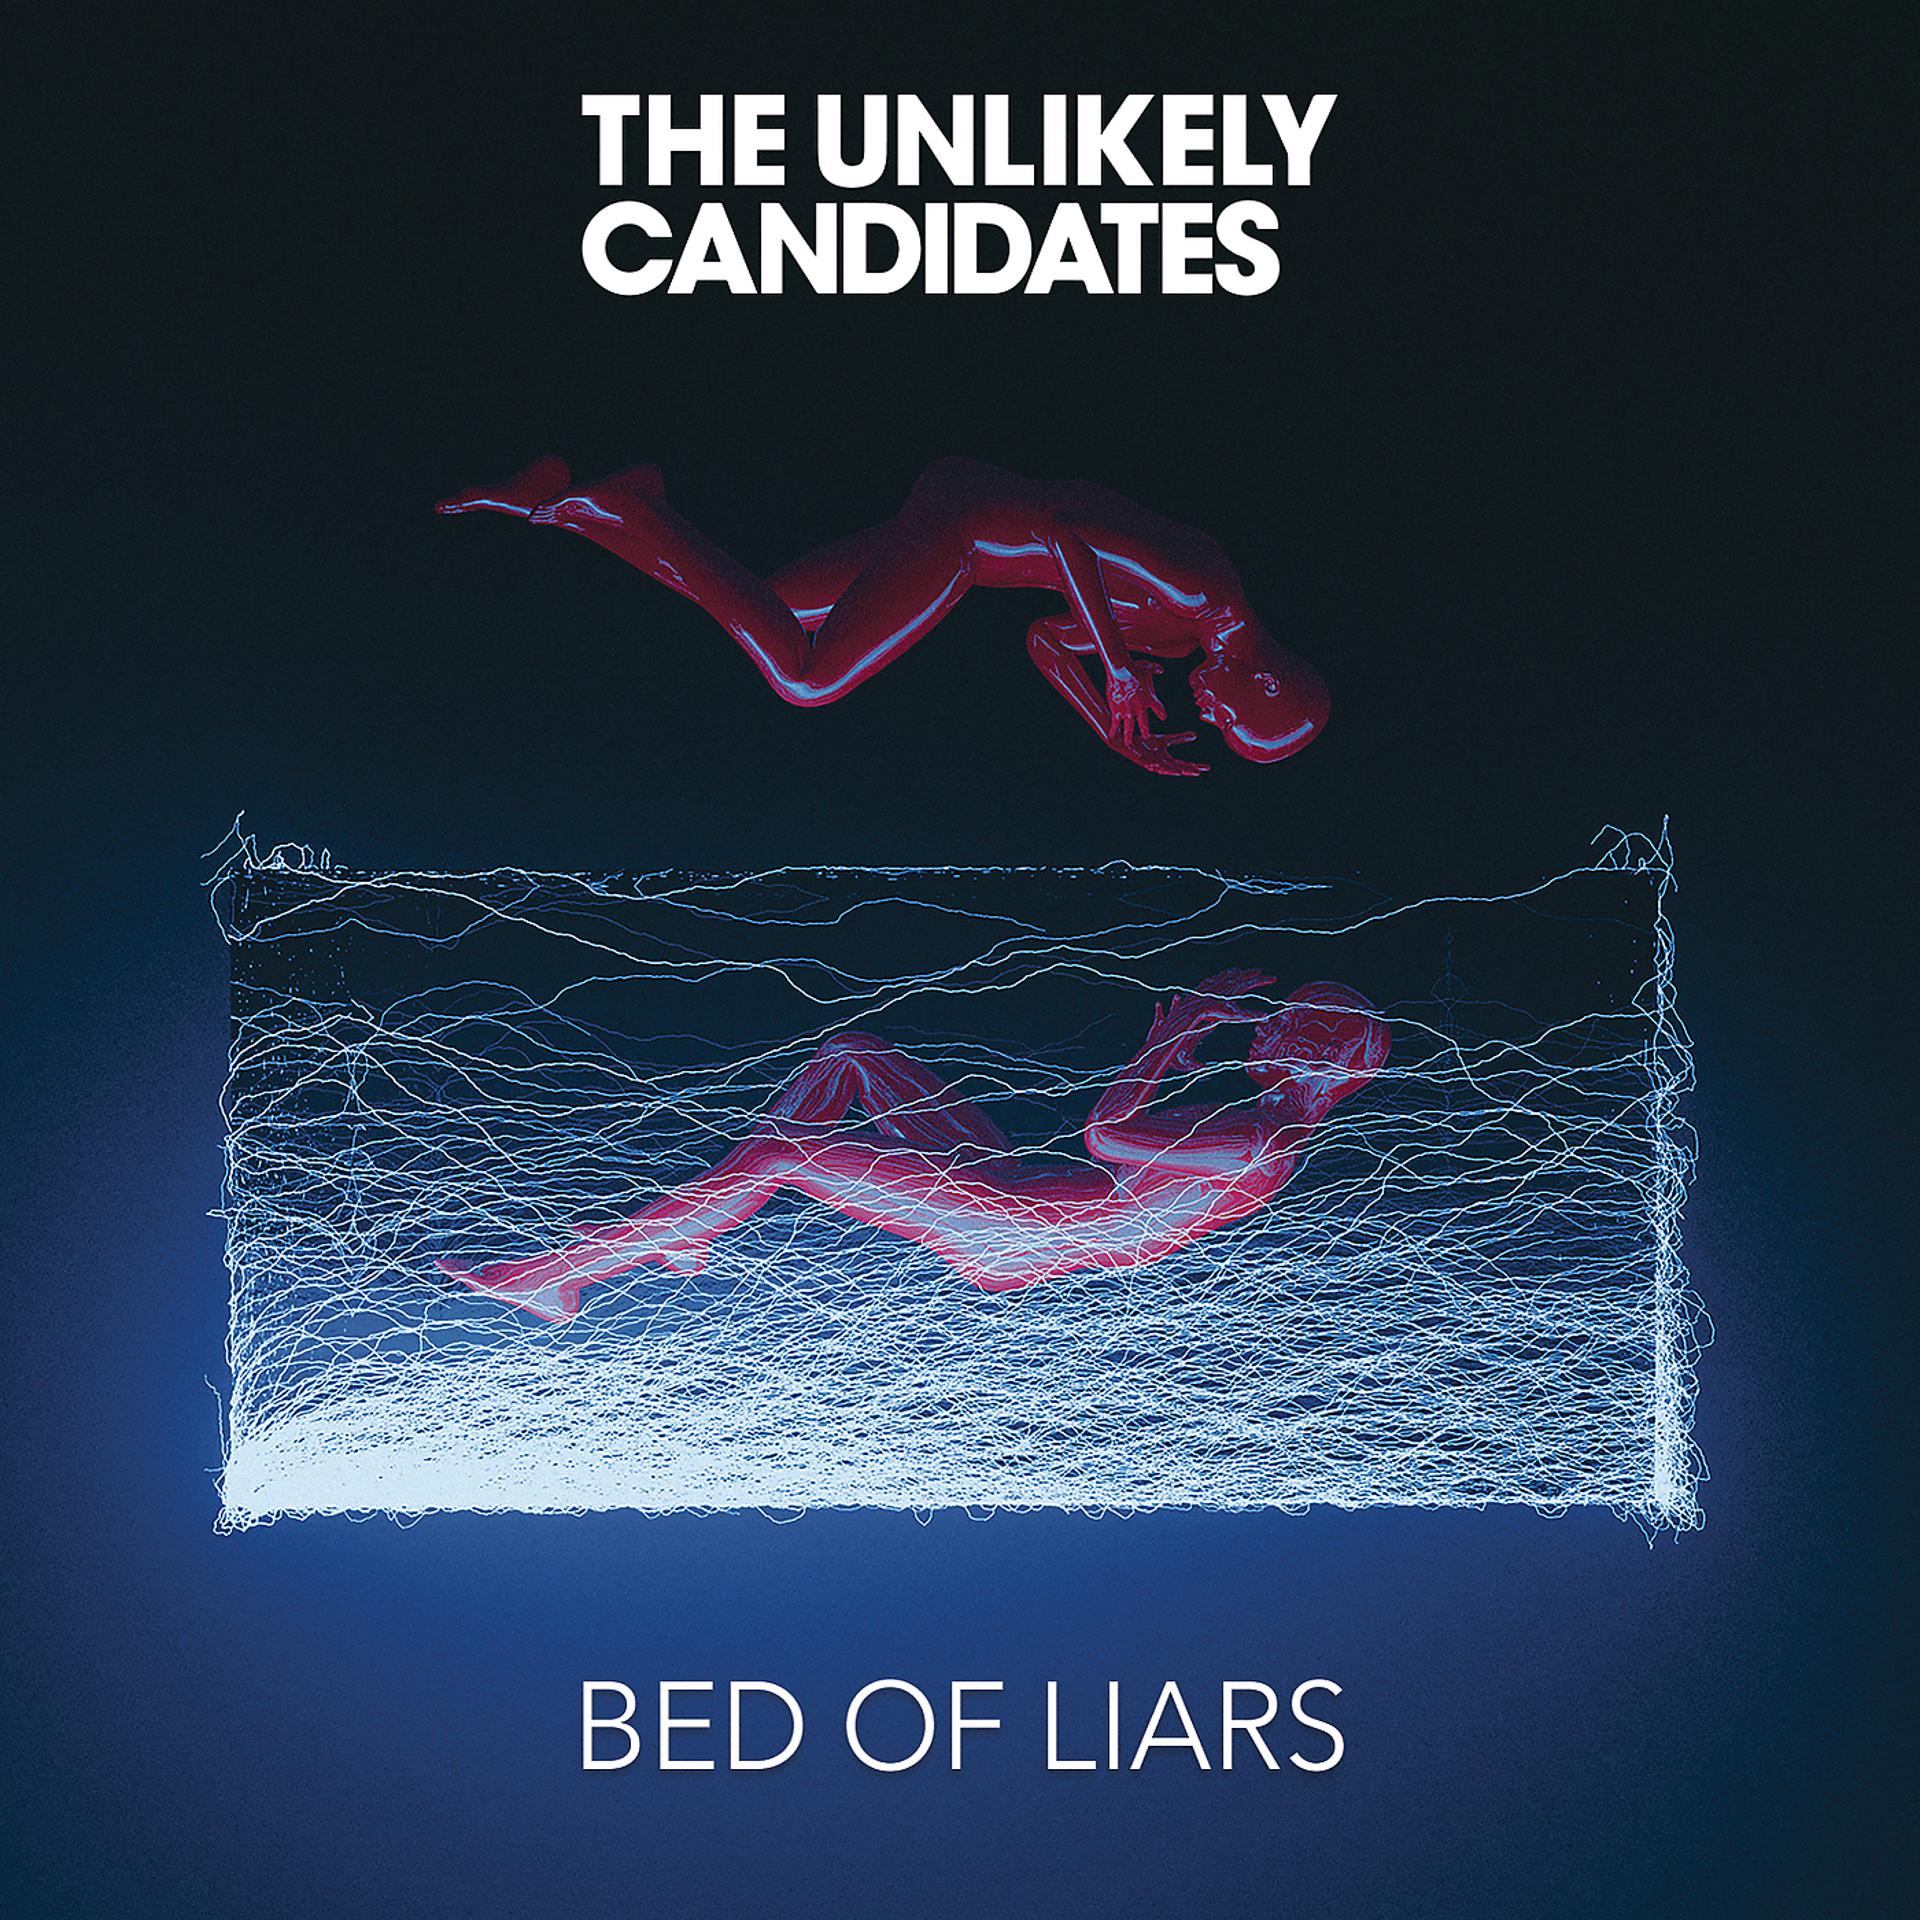 The unlikely candidates. The unlikely candidates violence. The unlikely candidates альбомы. The unlikely candidates Band. Call of my name weekend